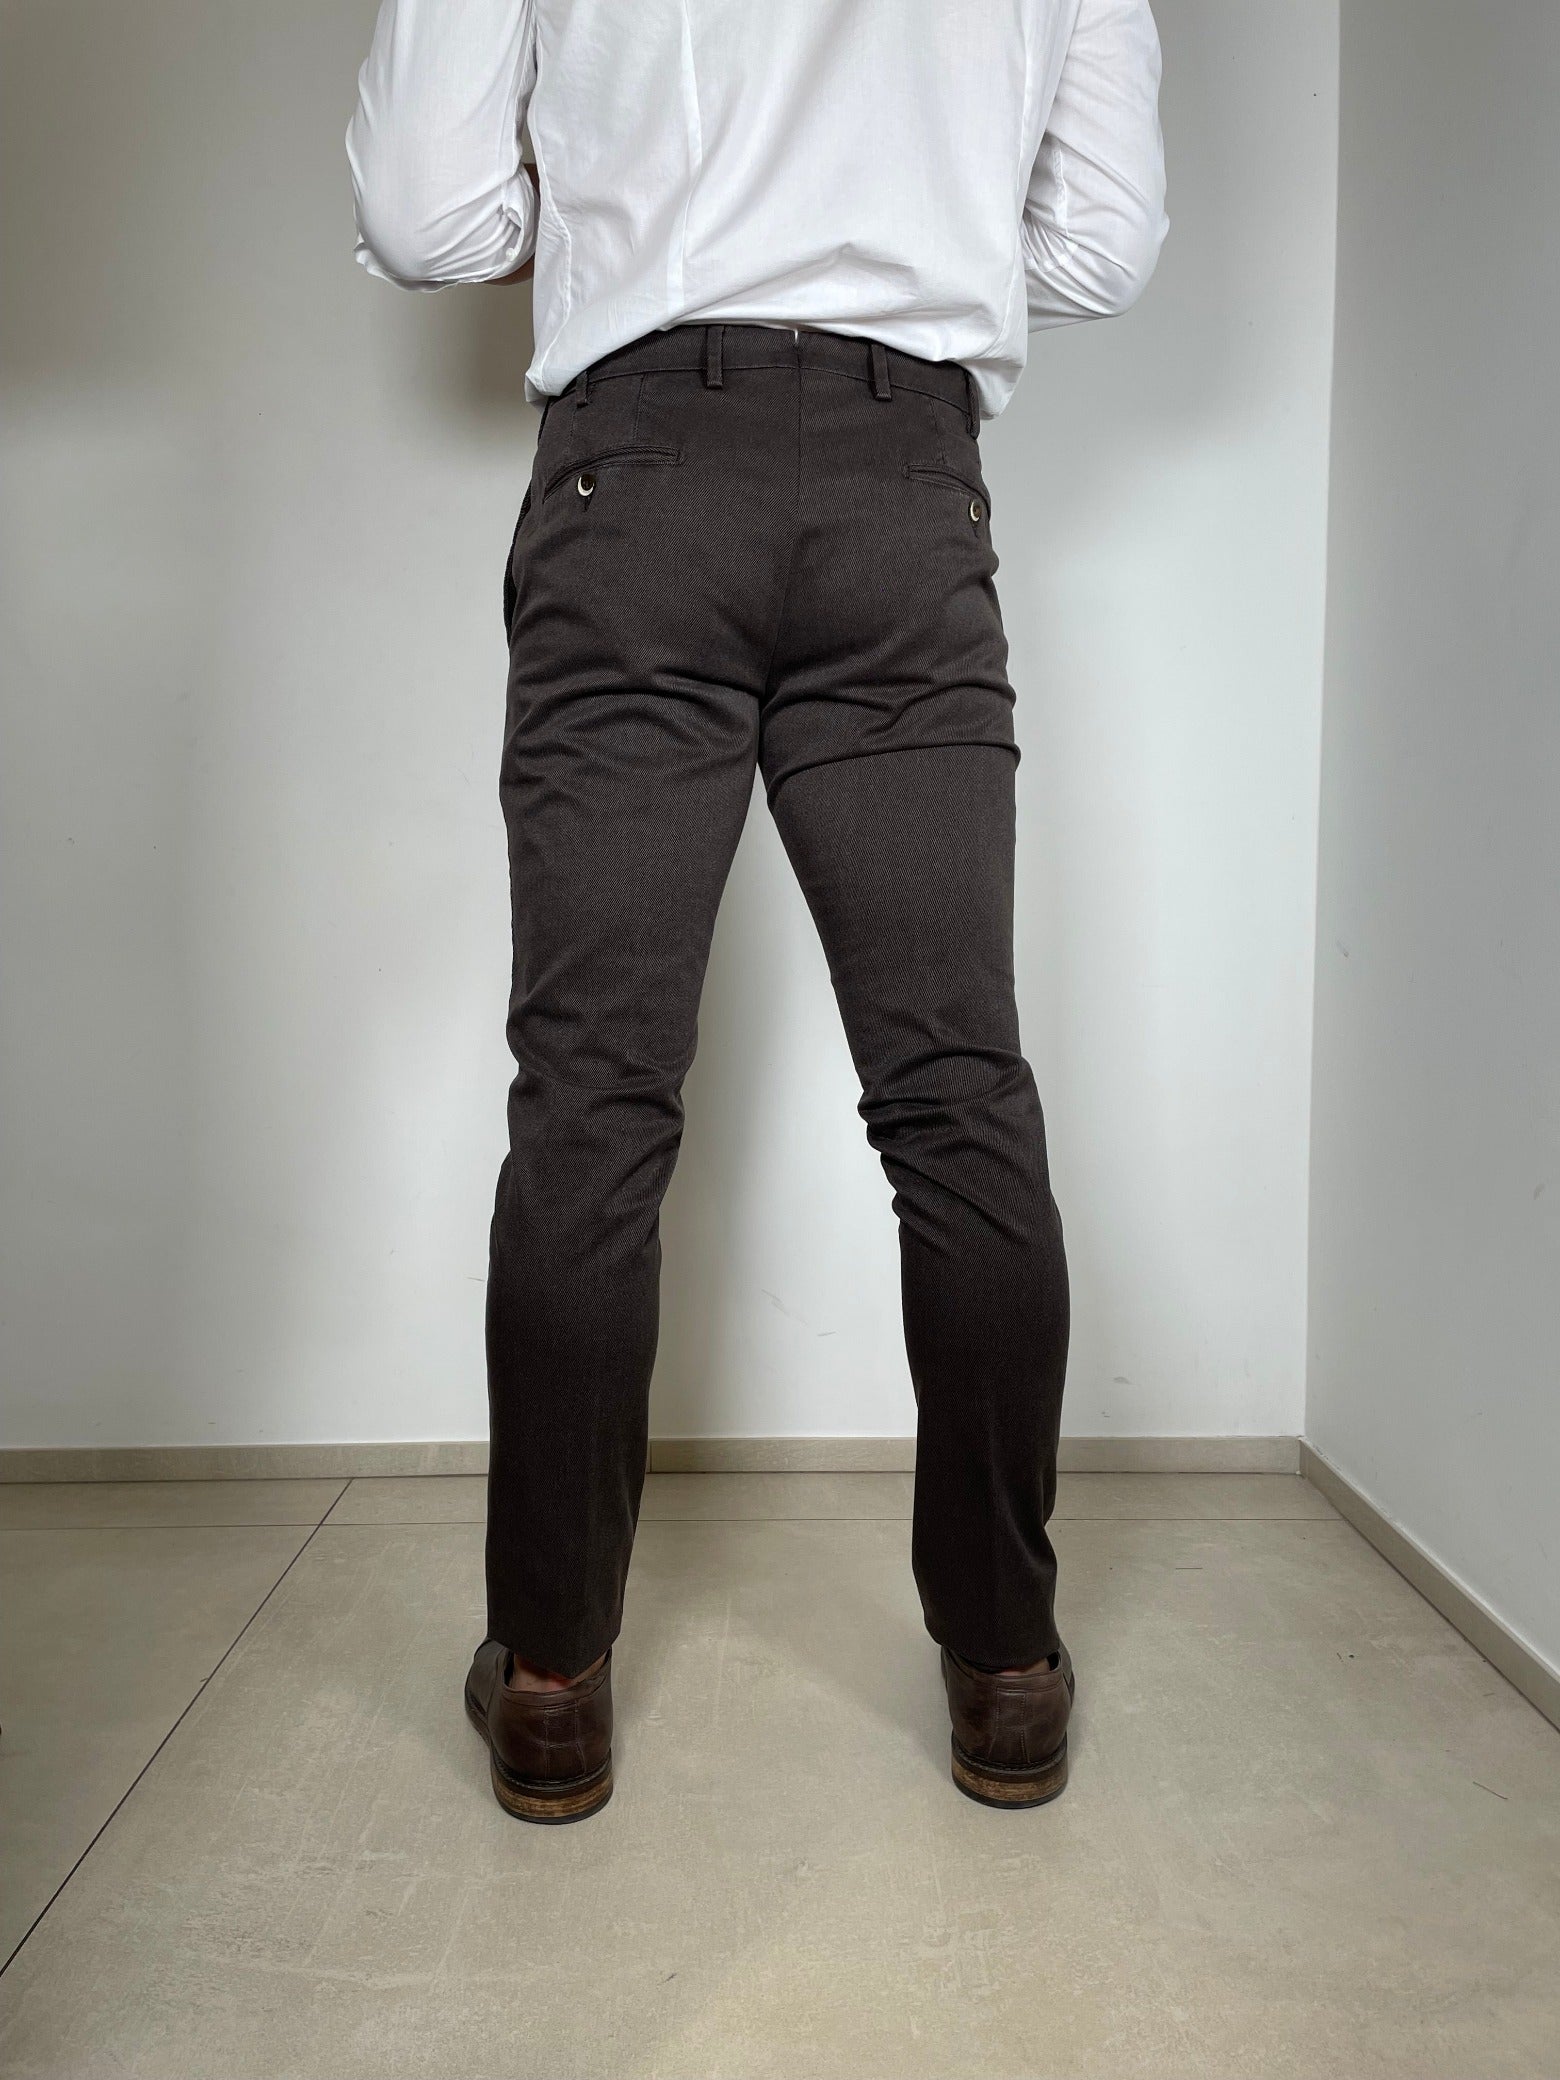 Tom Merritt Pantalone Modello 700/197